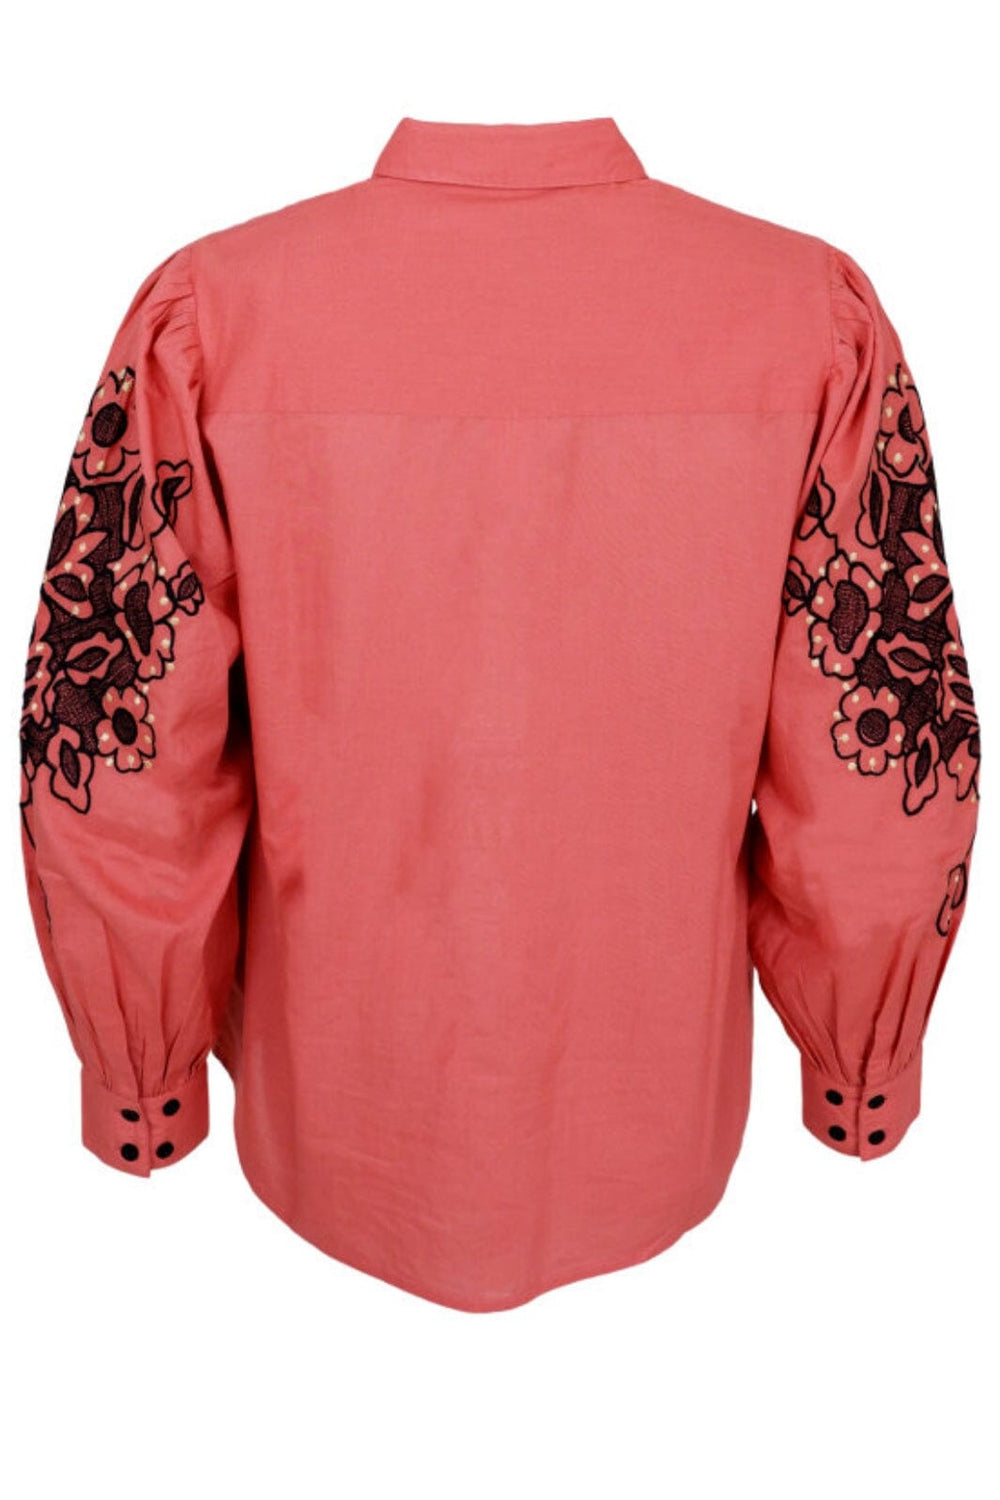 Forudbestilling - Black Colour - Bcdolly Shirt Blouse - Marsala Rose Skjorter 